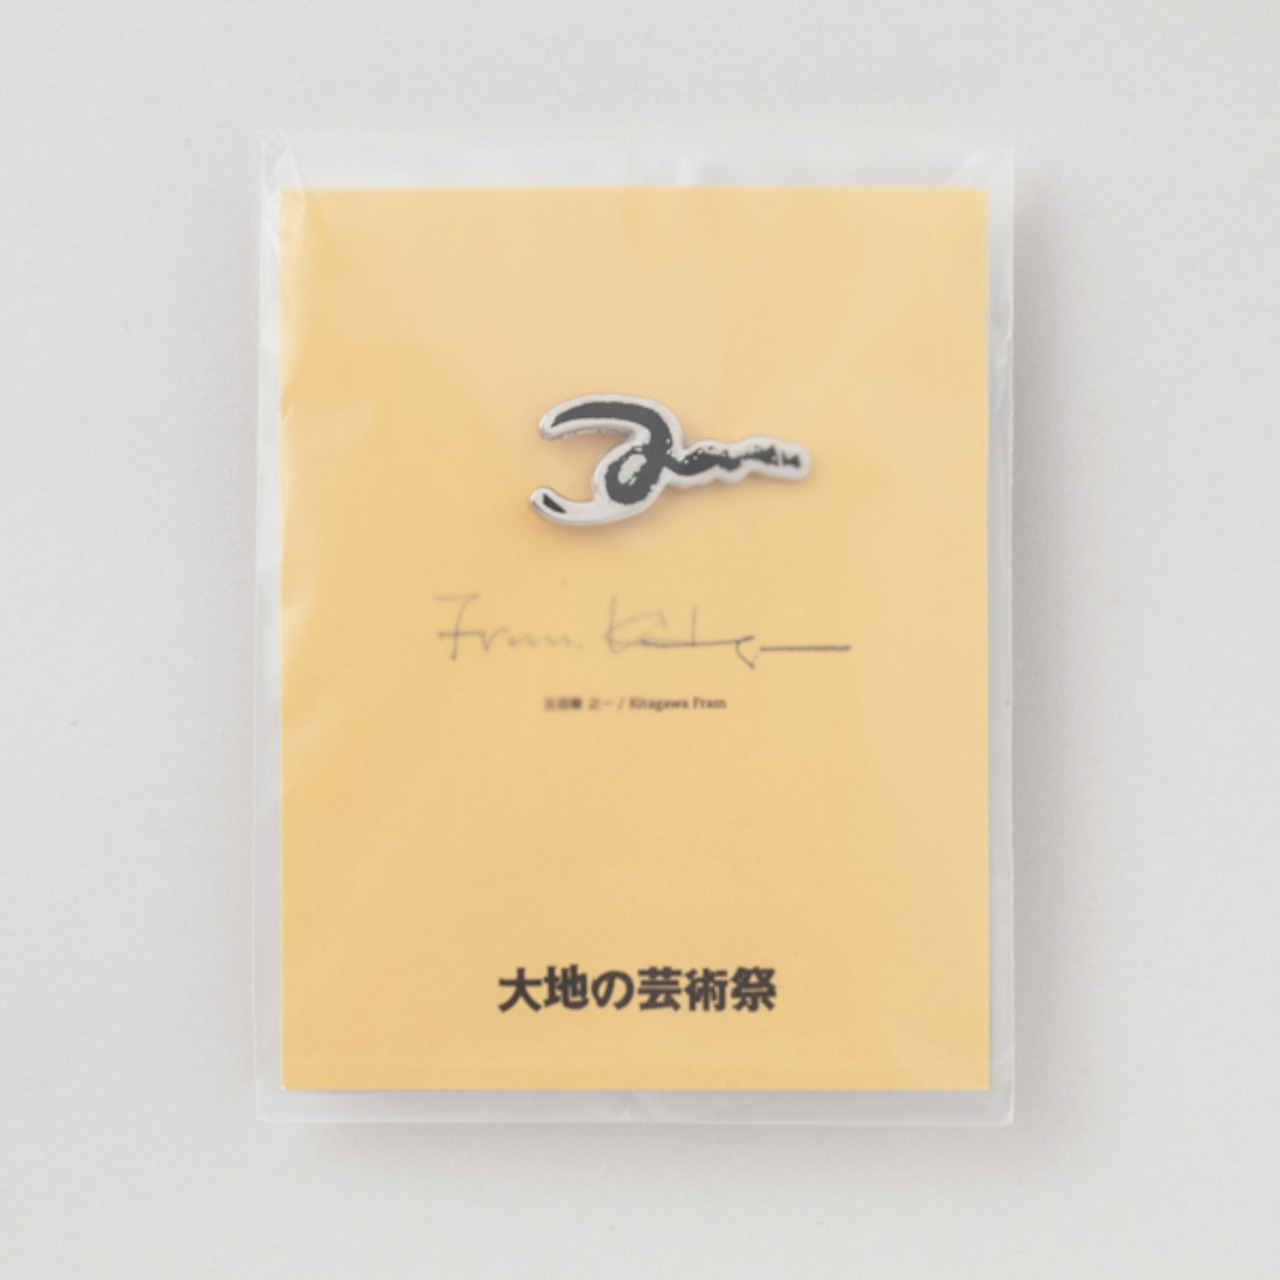 500筆・北川フラム画 ピンバッジ / Pin Badge